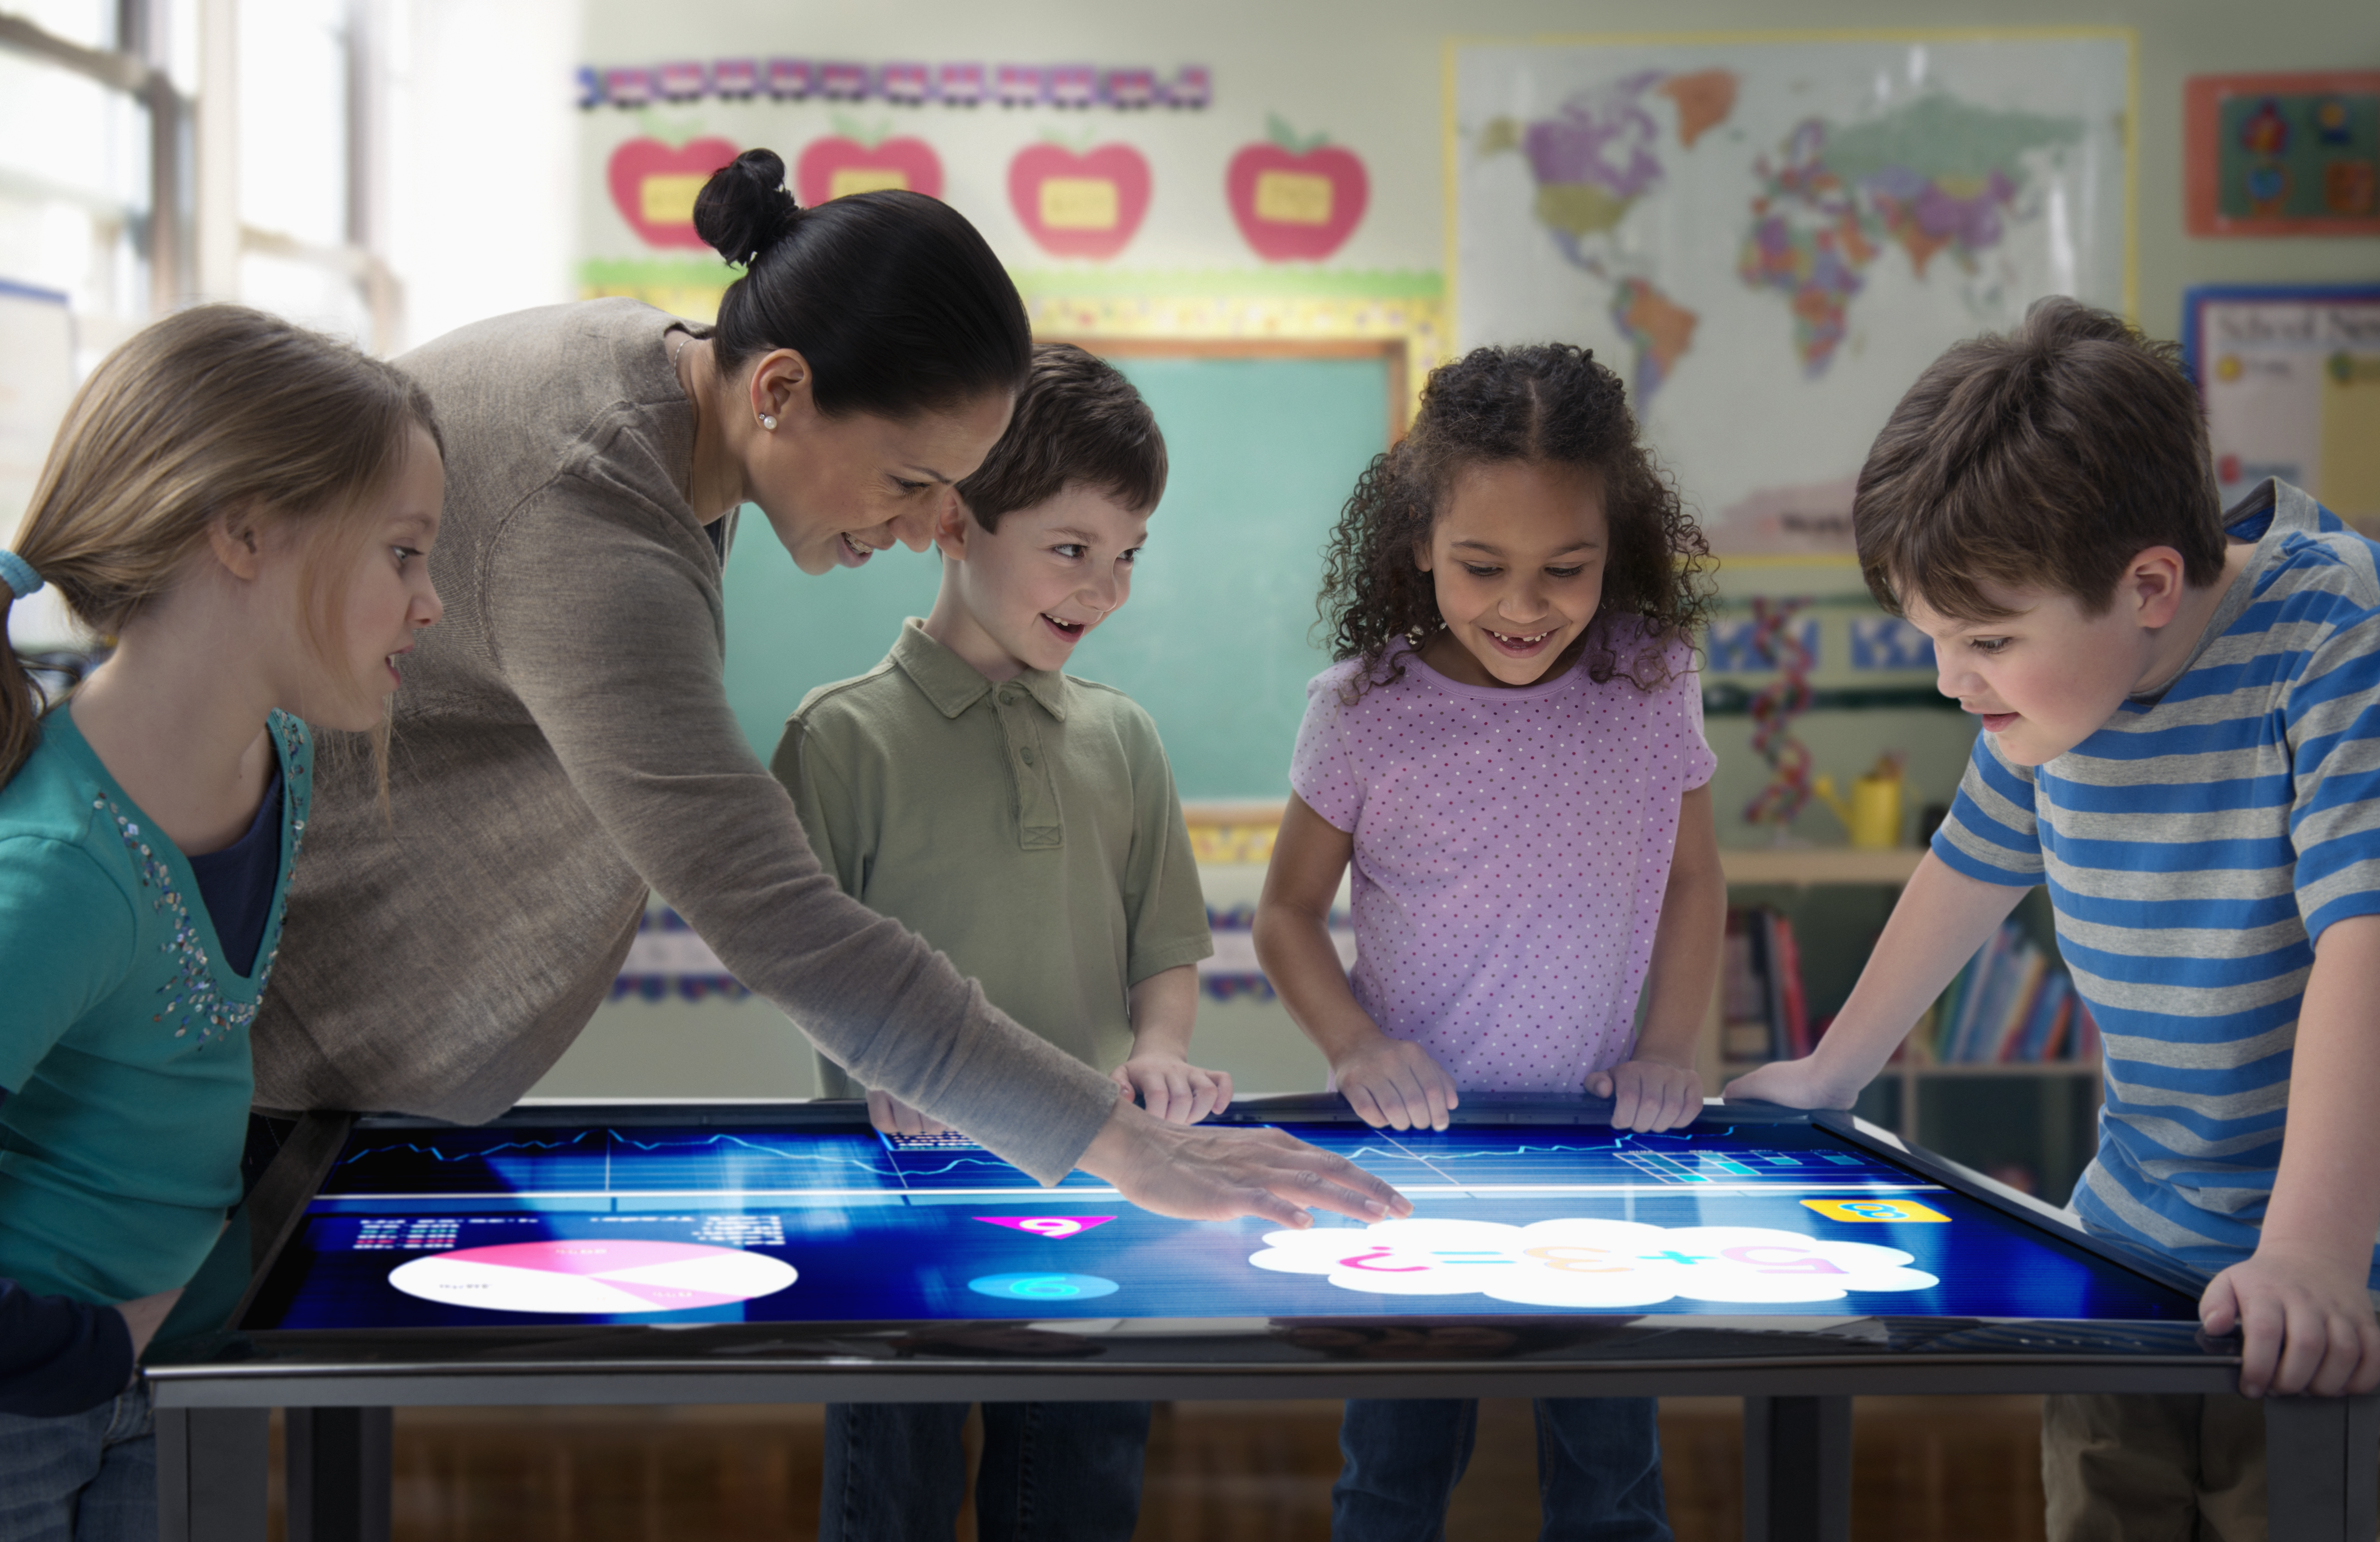 Передача опыта новому поколению. Интерактивный стол для школы. Современные игры для детей. Ученик будущего. Интерактивный для детей.